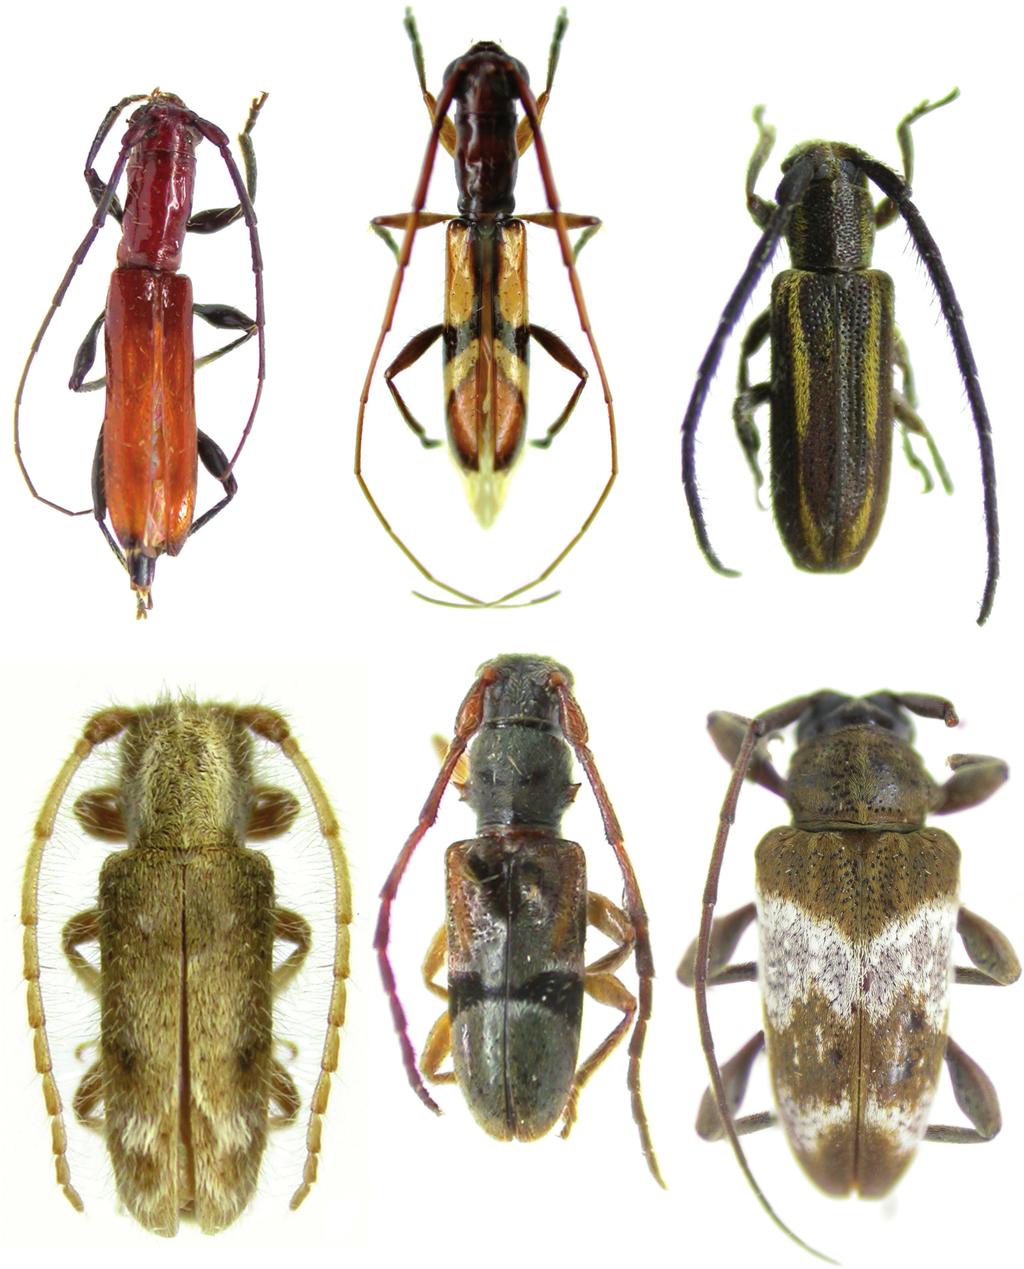 Notas, novos registros e novas espécies de Cerambycidae 1 329 2 3 5 4 6 Figs.1 6. 1, Compsibidion uniforme sp. nov., holótipo fêmea, comprimento, 8,2 mm; 2, Heterachthes rafaeli sp. nov., holótipo macho, comprimento, 10,0 mm; 3, Amphicnaeia lineolata sp.